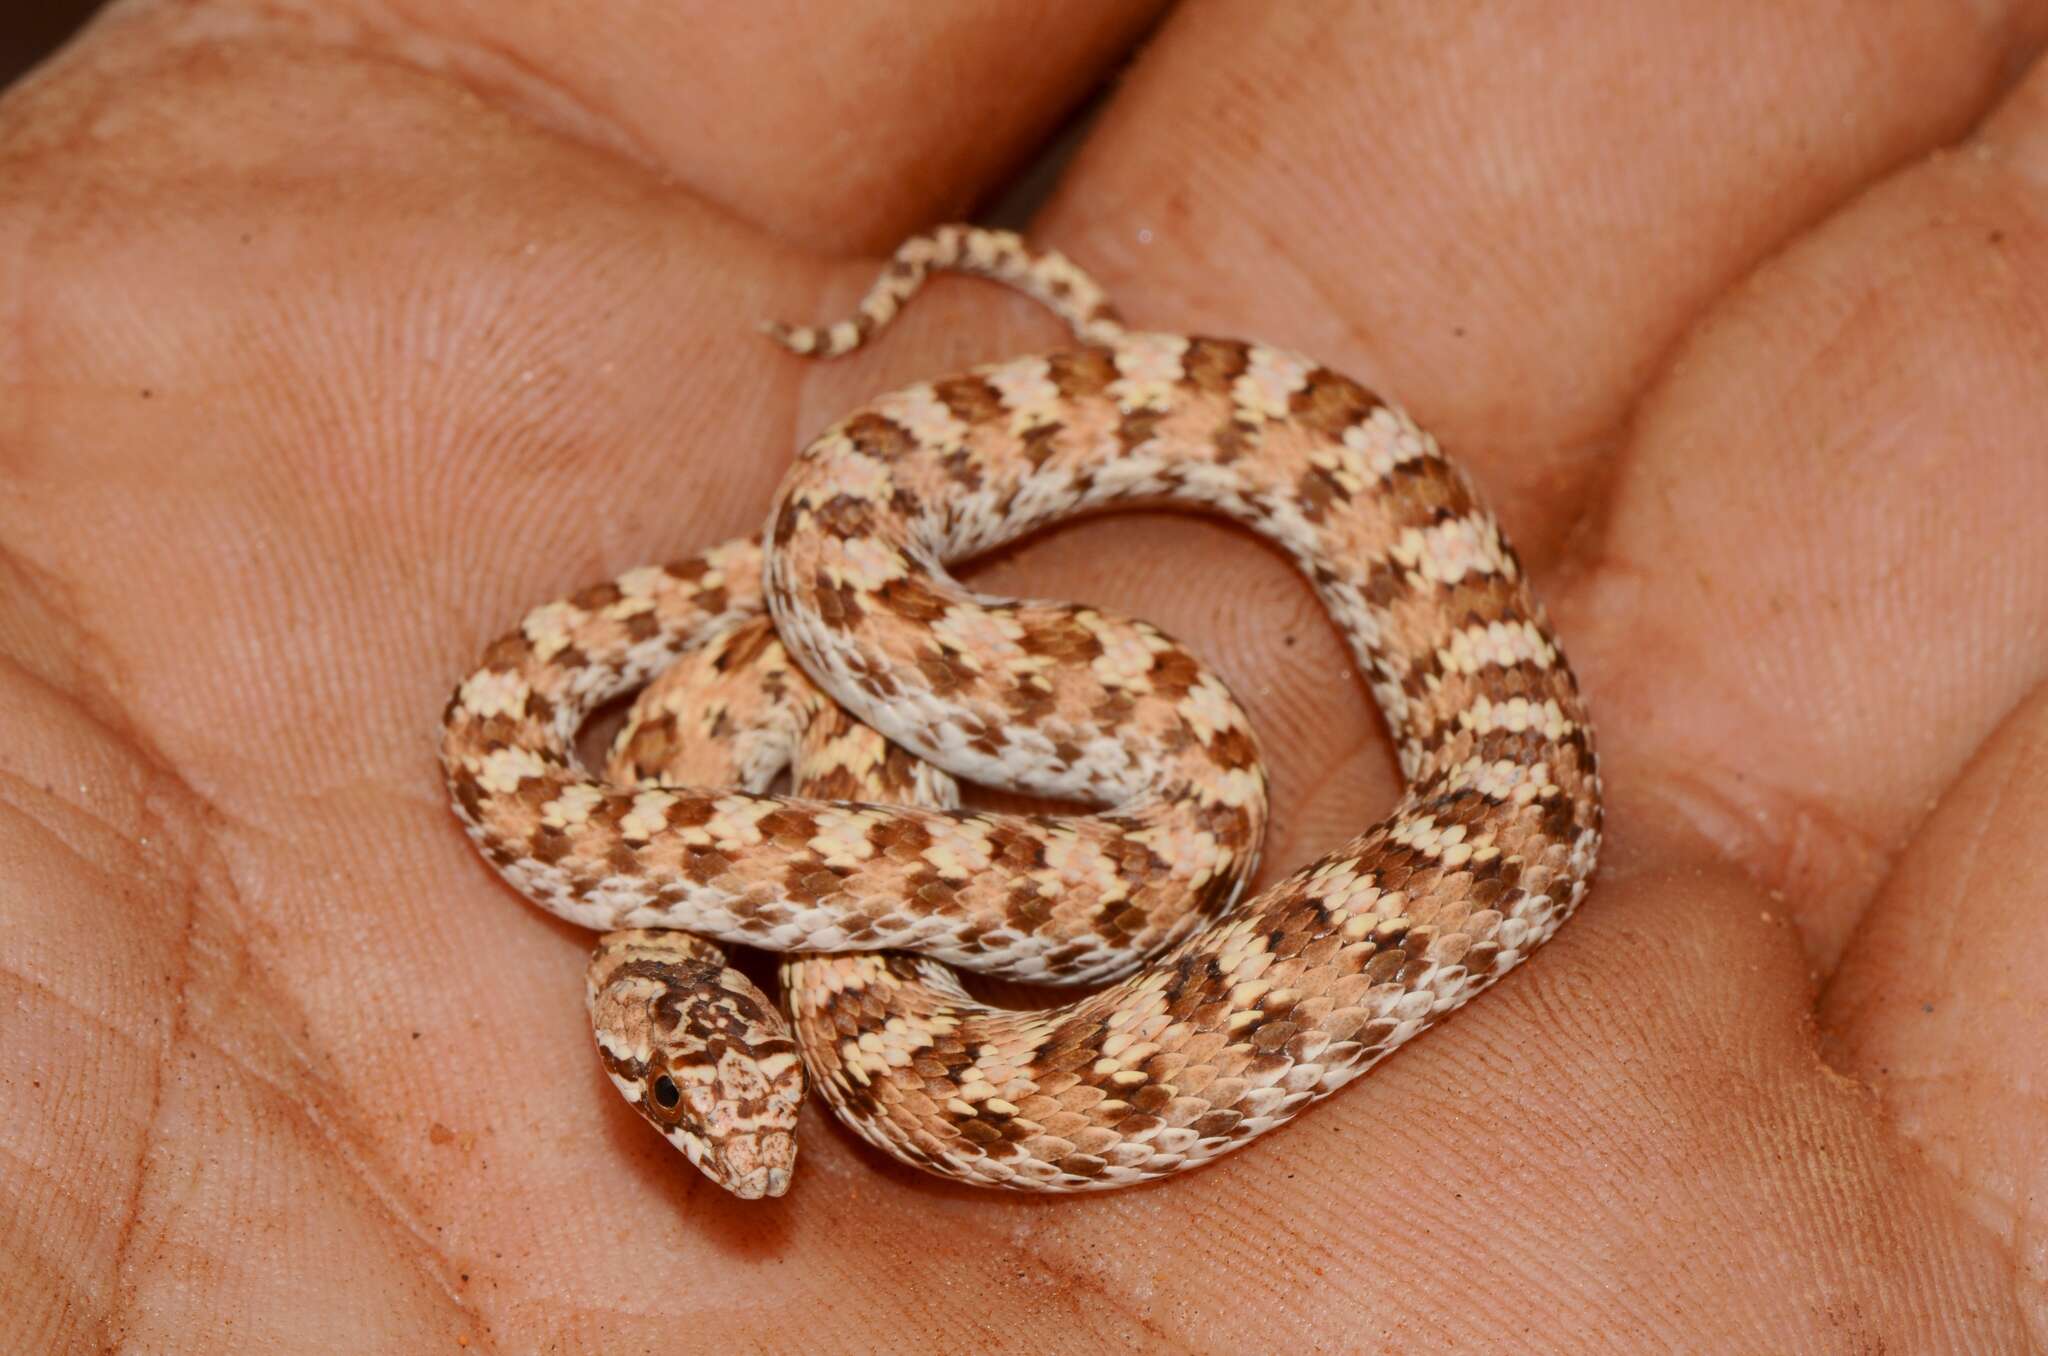 Image of Dwarf Beaked Snake